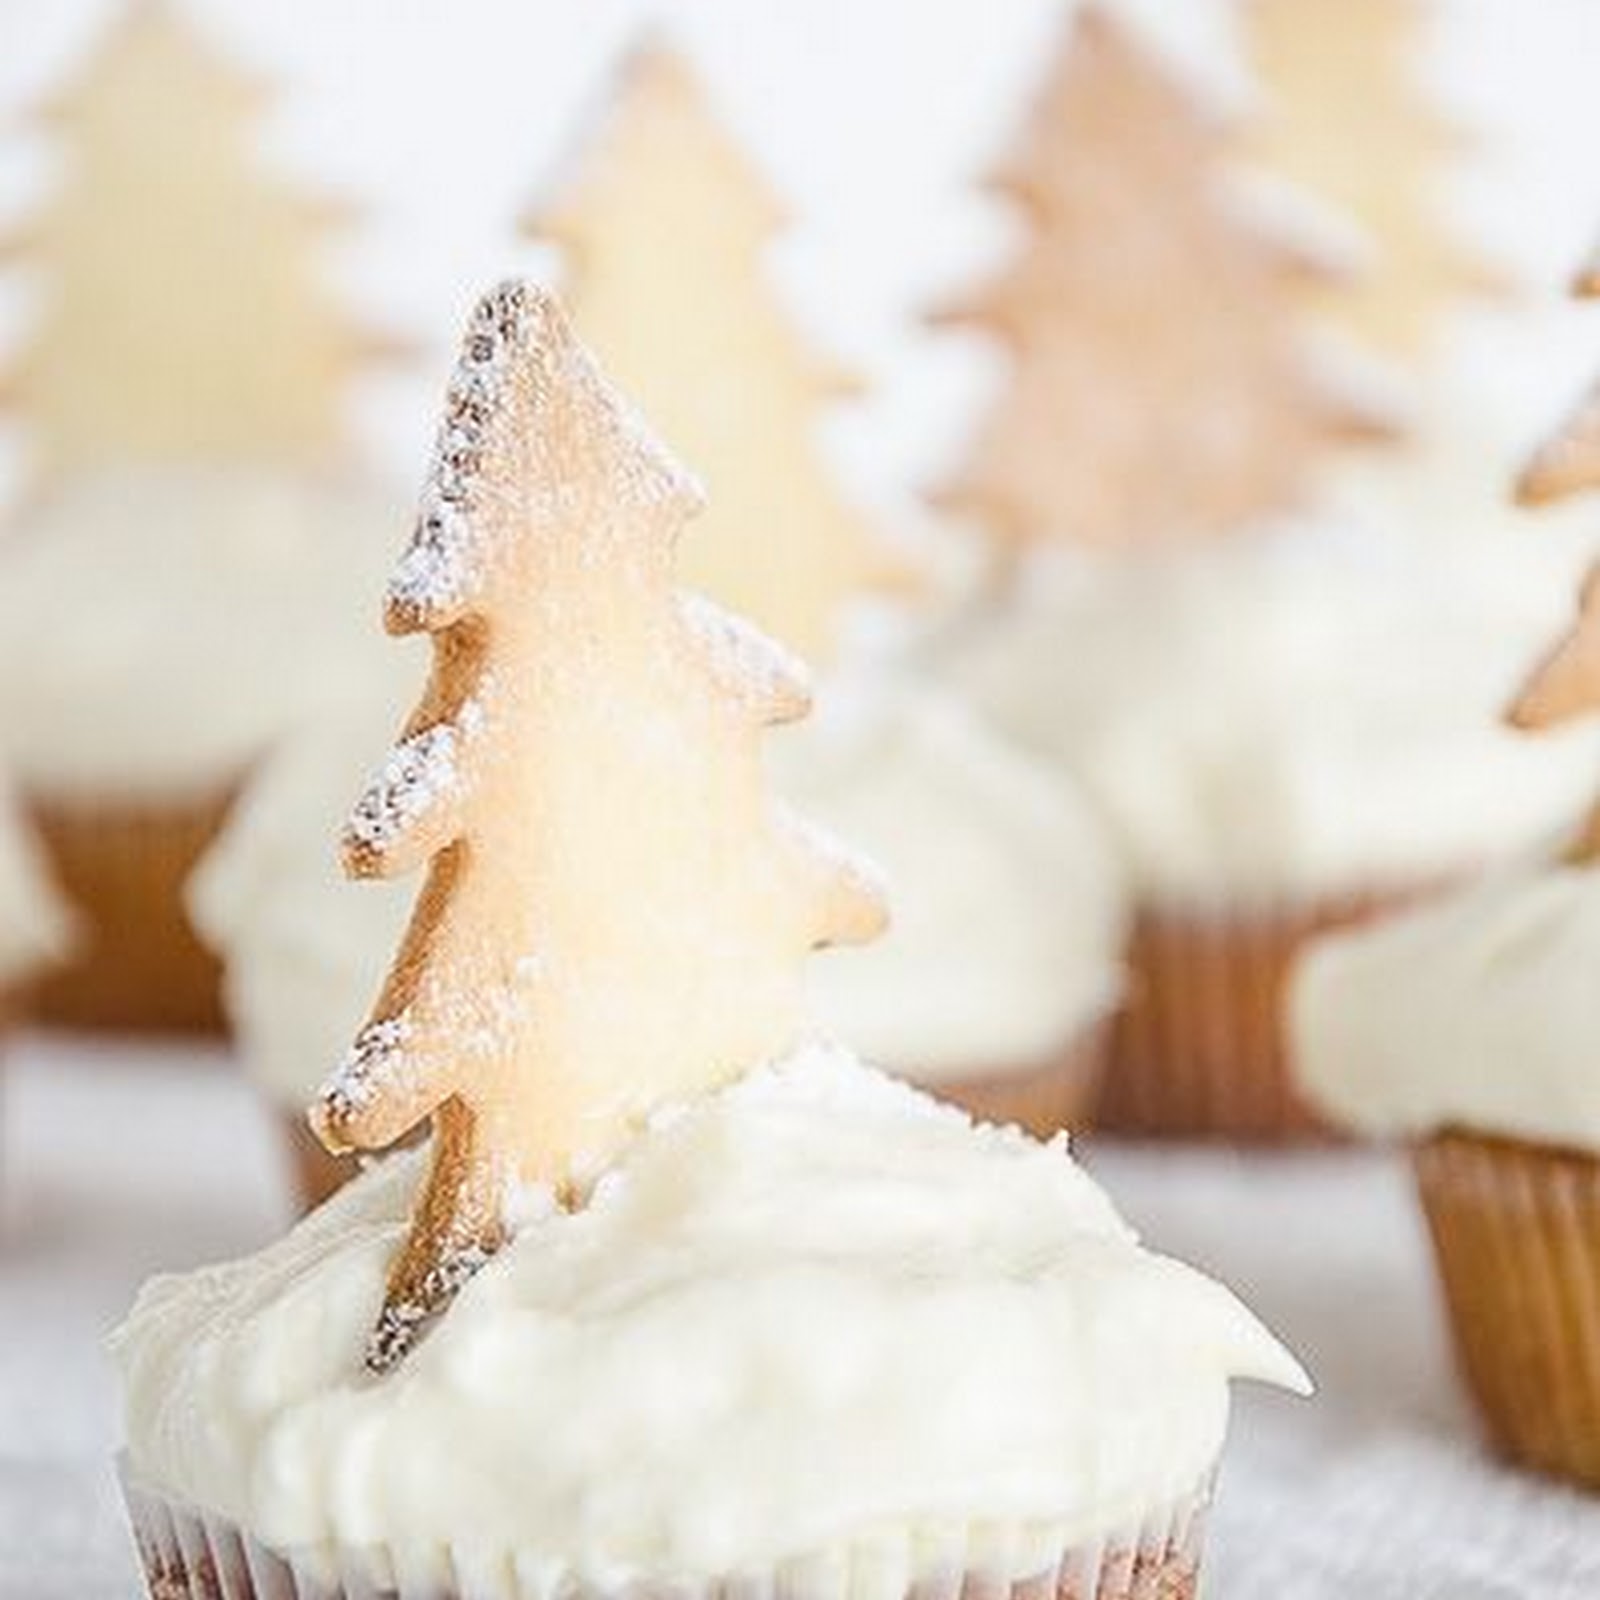 Waniliowe babeczki świąteczne / Christmas vanilla cupcakes